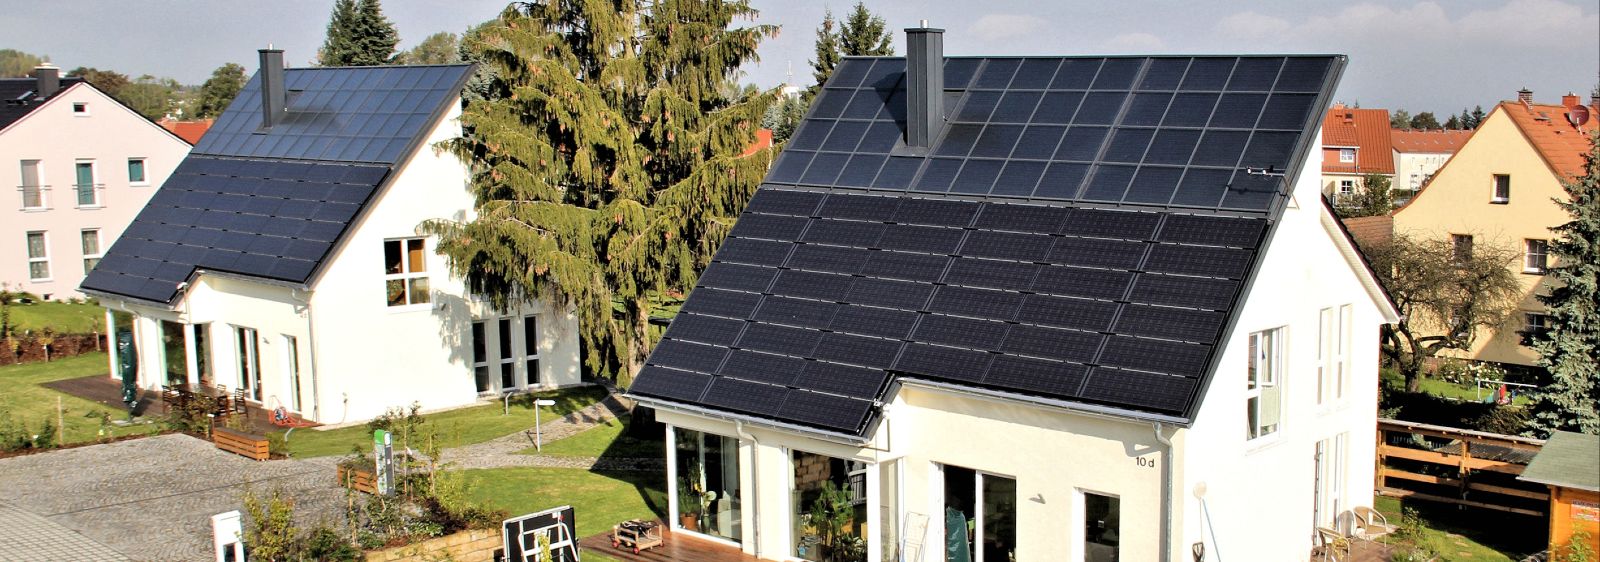 Die beiden baugleichen Einfamilienhäuser in Freiberg setzen auf eine vollständig regenerative Versorgung mit Strom und Wärme. Foto aus dem Sommer 2014.